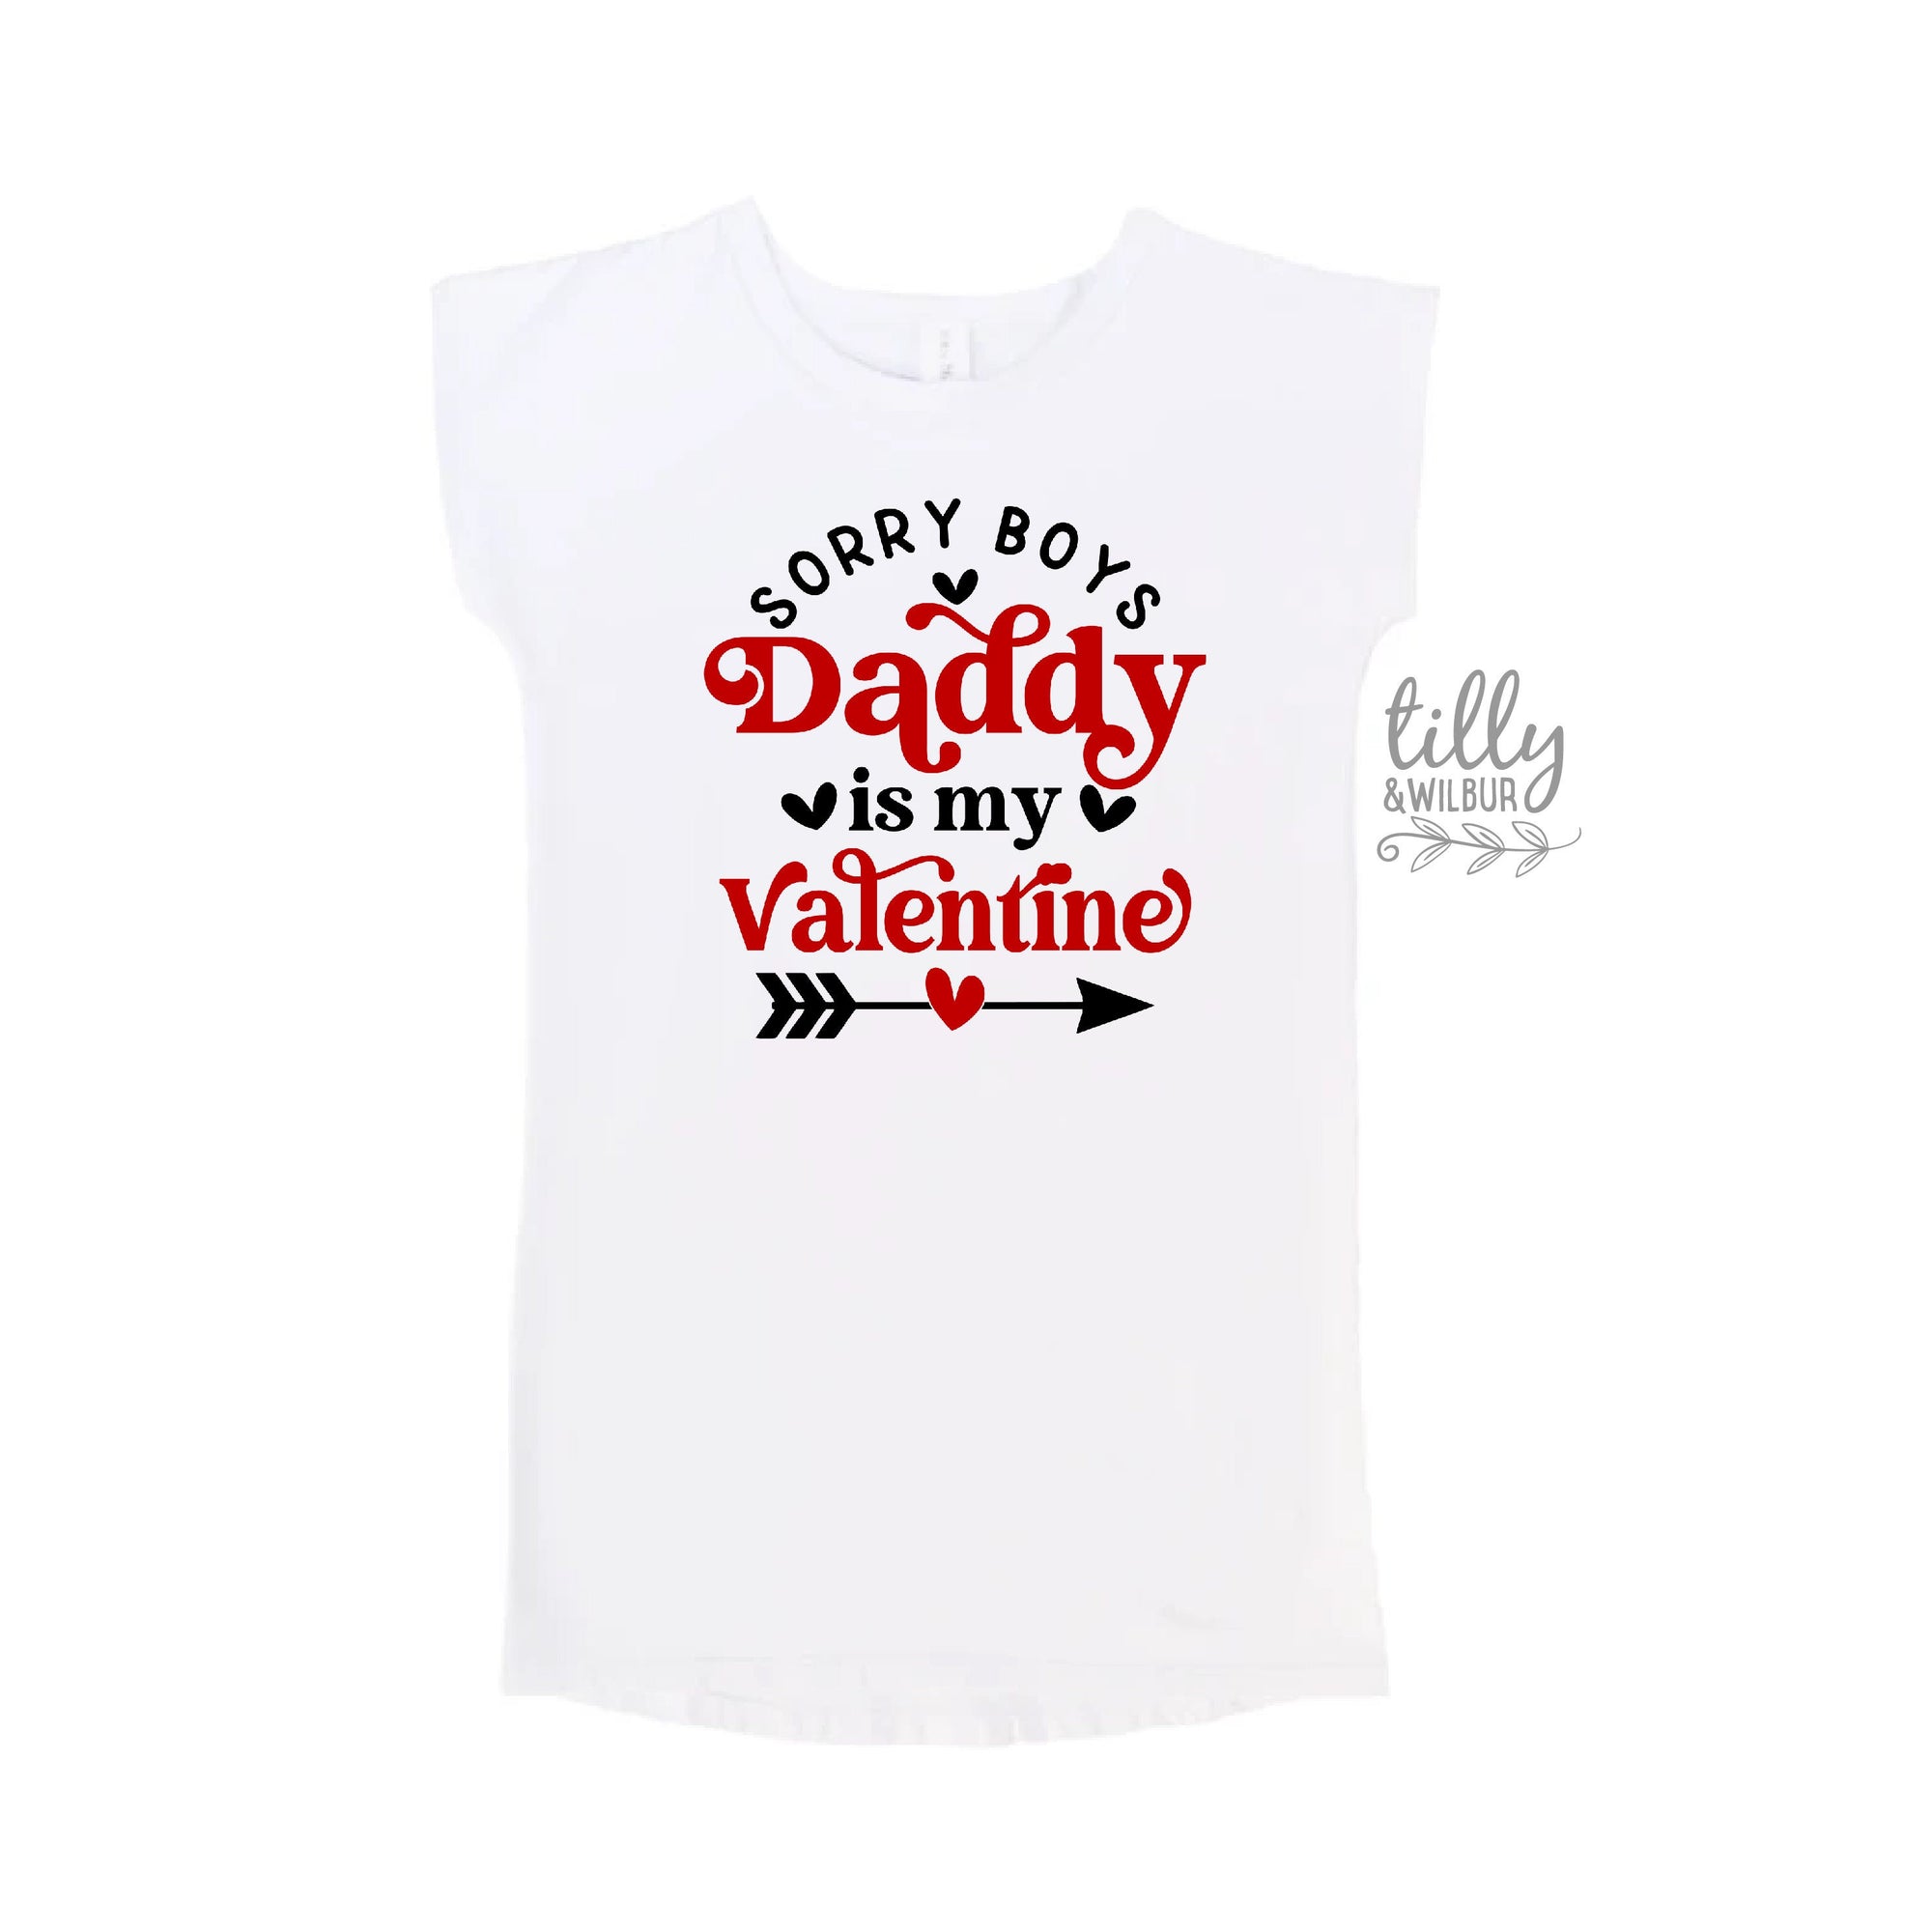 Sorry Boys Daddy Is My Valentine T-Shirt Dress, Daddy's Little Valentine T-Shirt, Valentine's Day T-Shirt, Daughter Valentine's Day Gift